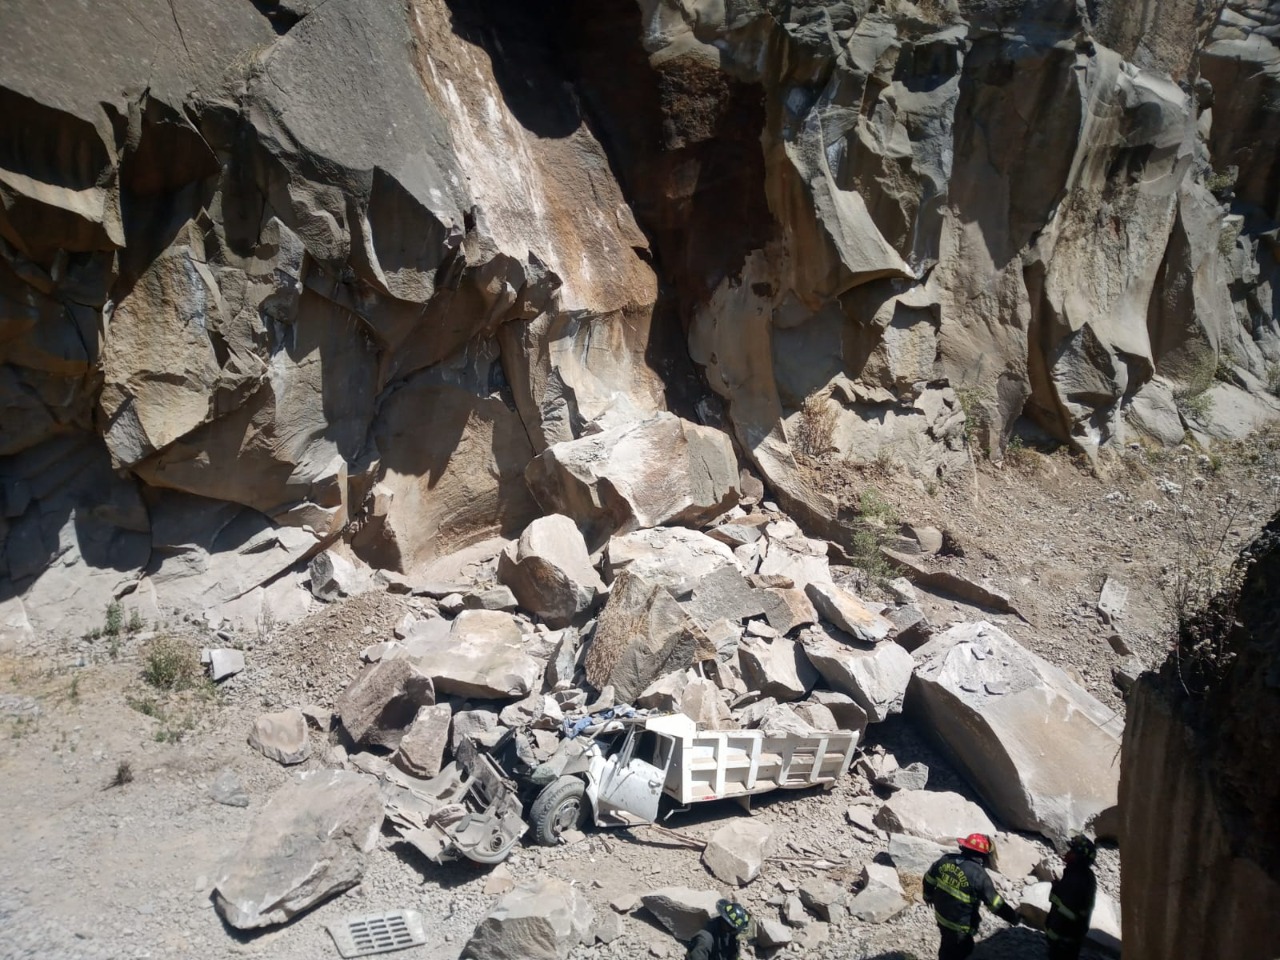 Derrumbe en mina de piedra, en Toluca, deja 4 lesionados